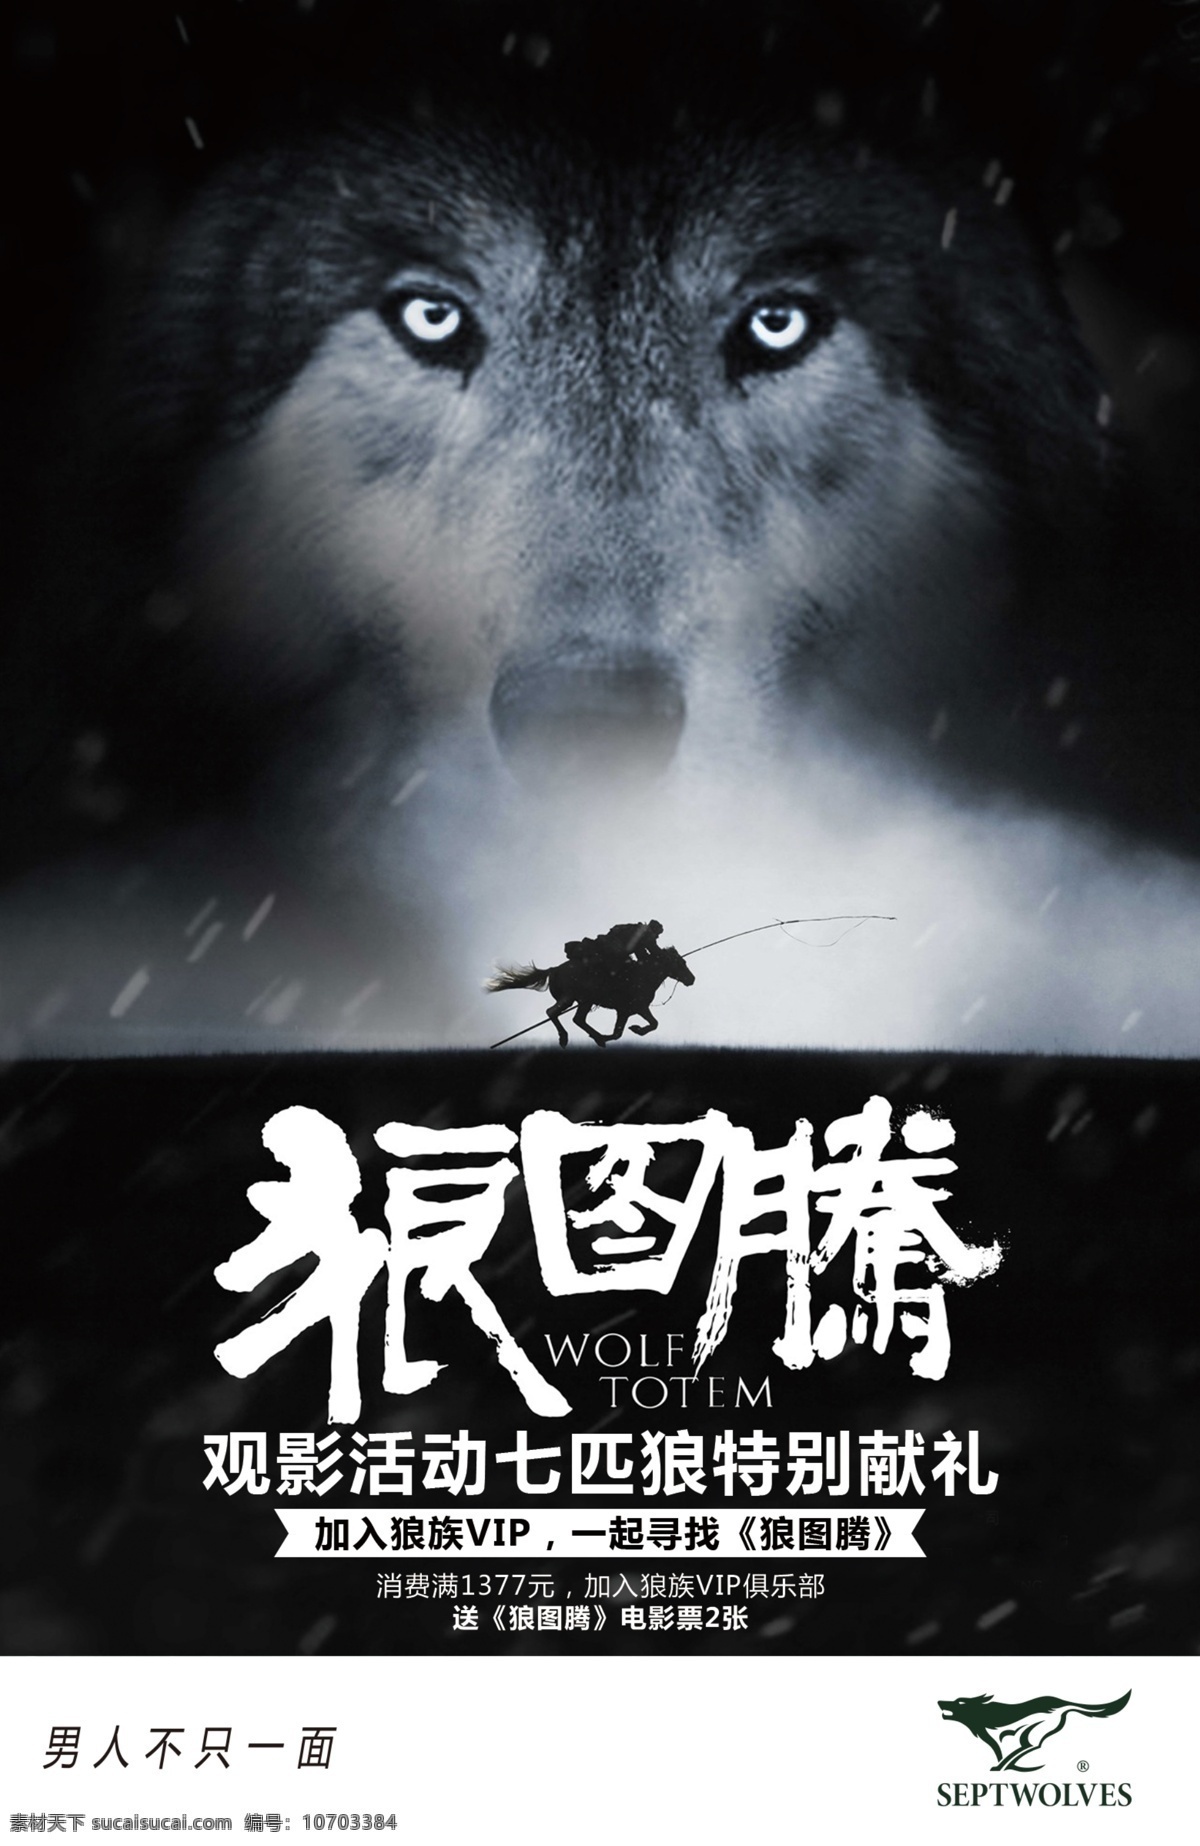 七匹狼 观影 活动 海报 狼图腾 观影活动 原创设计 原创海报